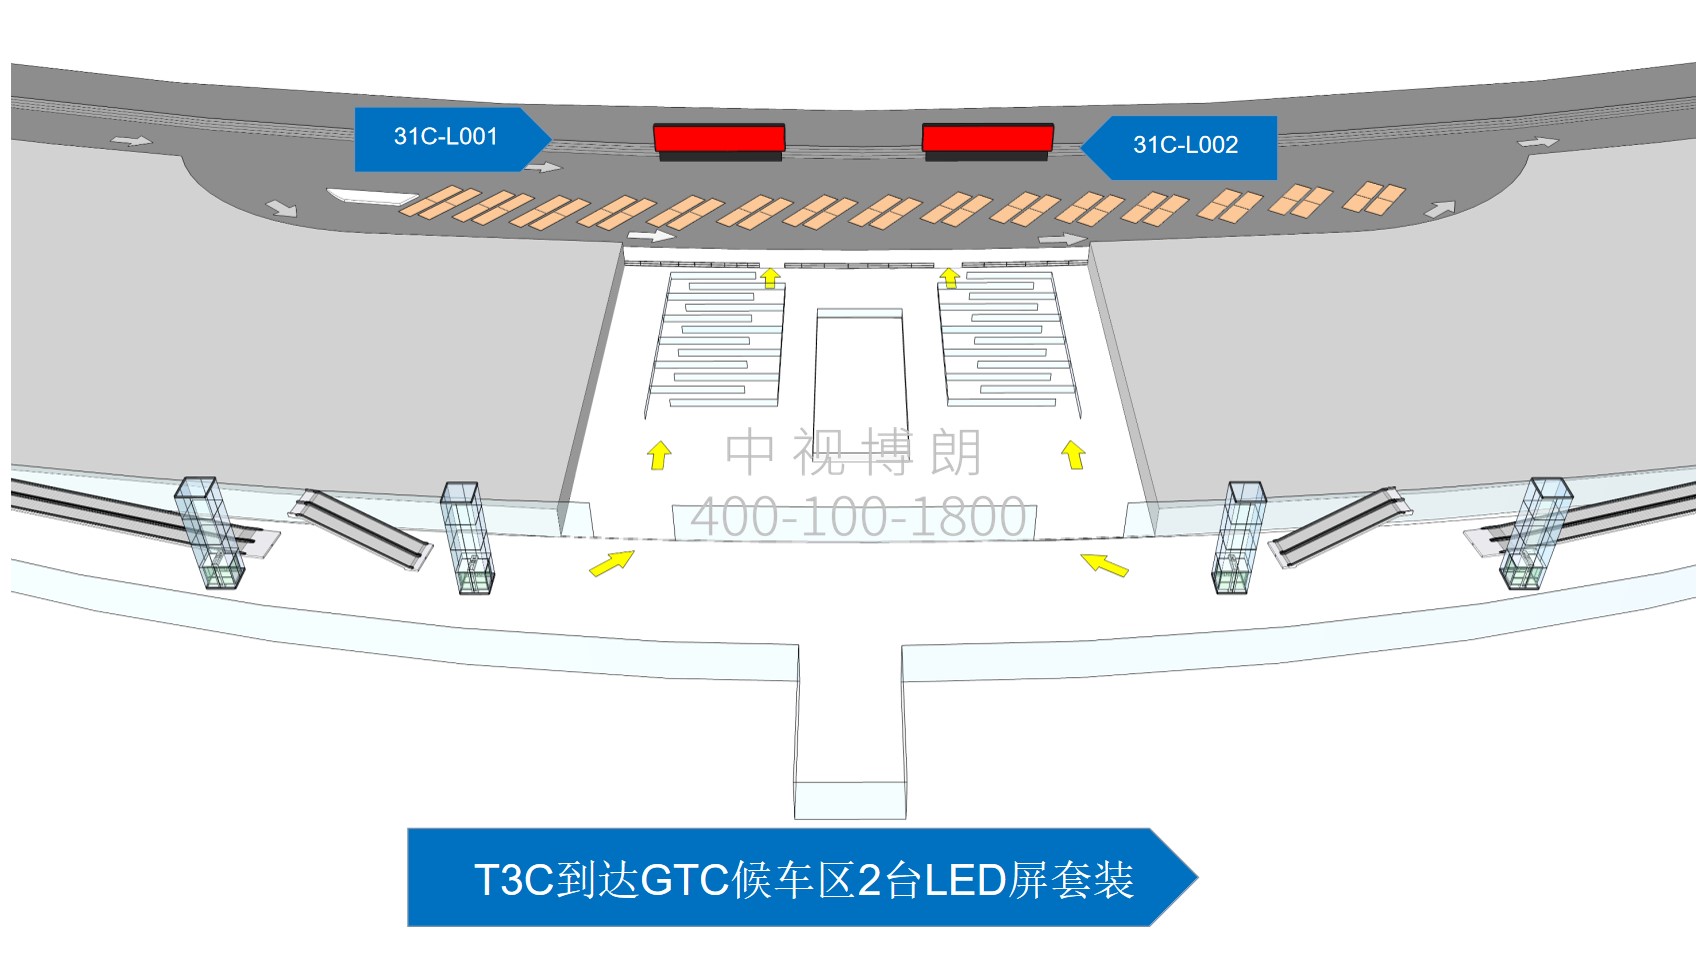 北京首都机场广告-T3C到达GTC候车区LED屏套装位置图